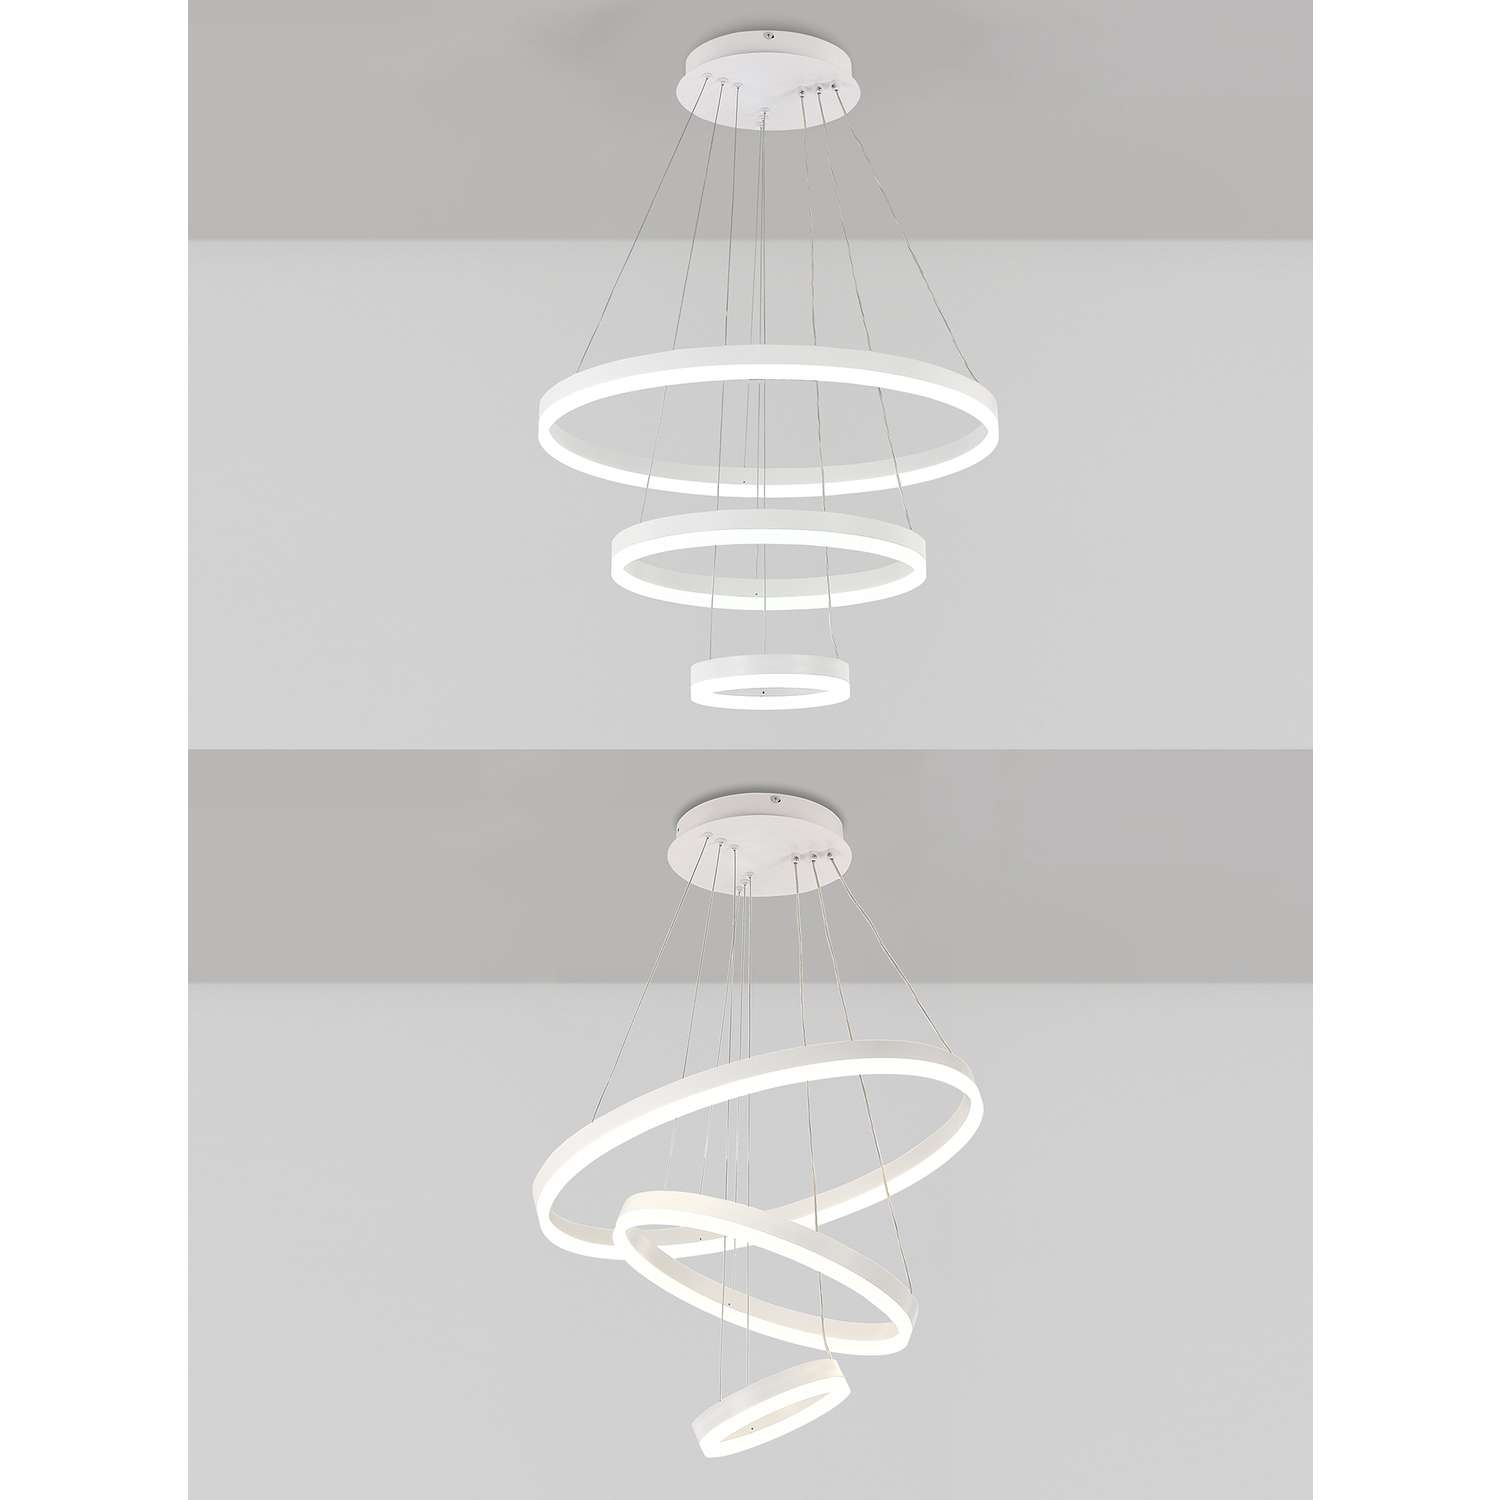 Светодиодный светильник NATALI KOVALTSEVA люстра тройной нимб 160W белый LED - фото 2